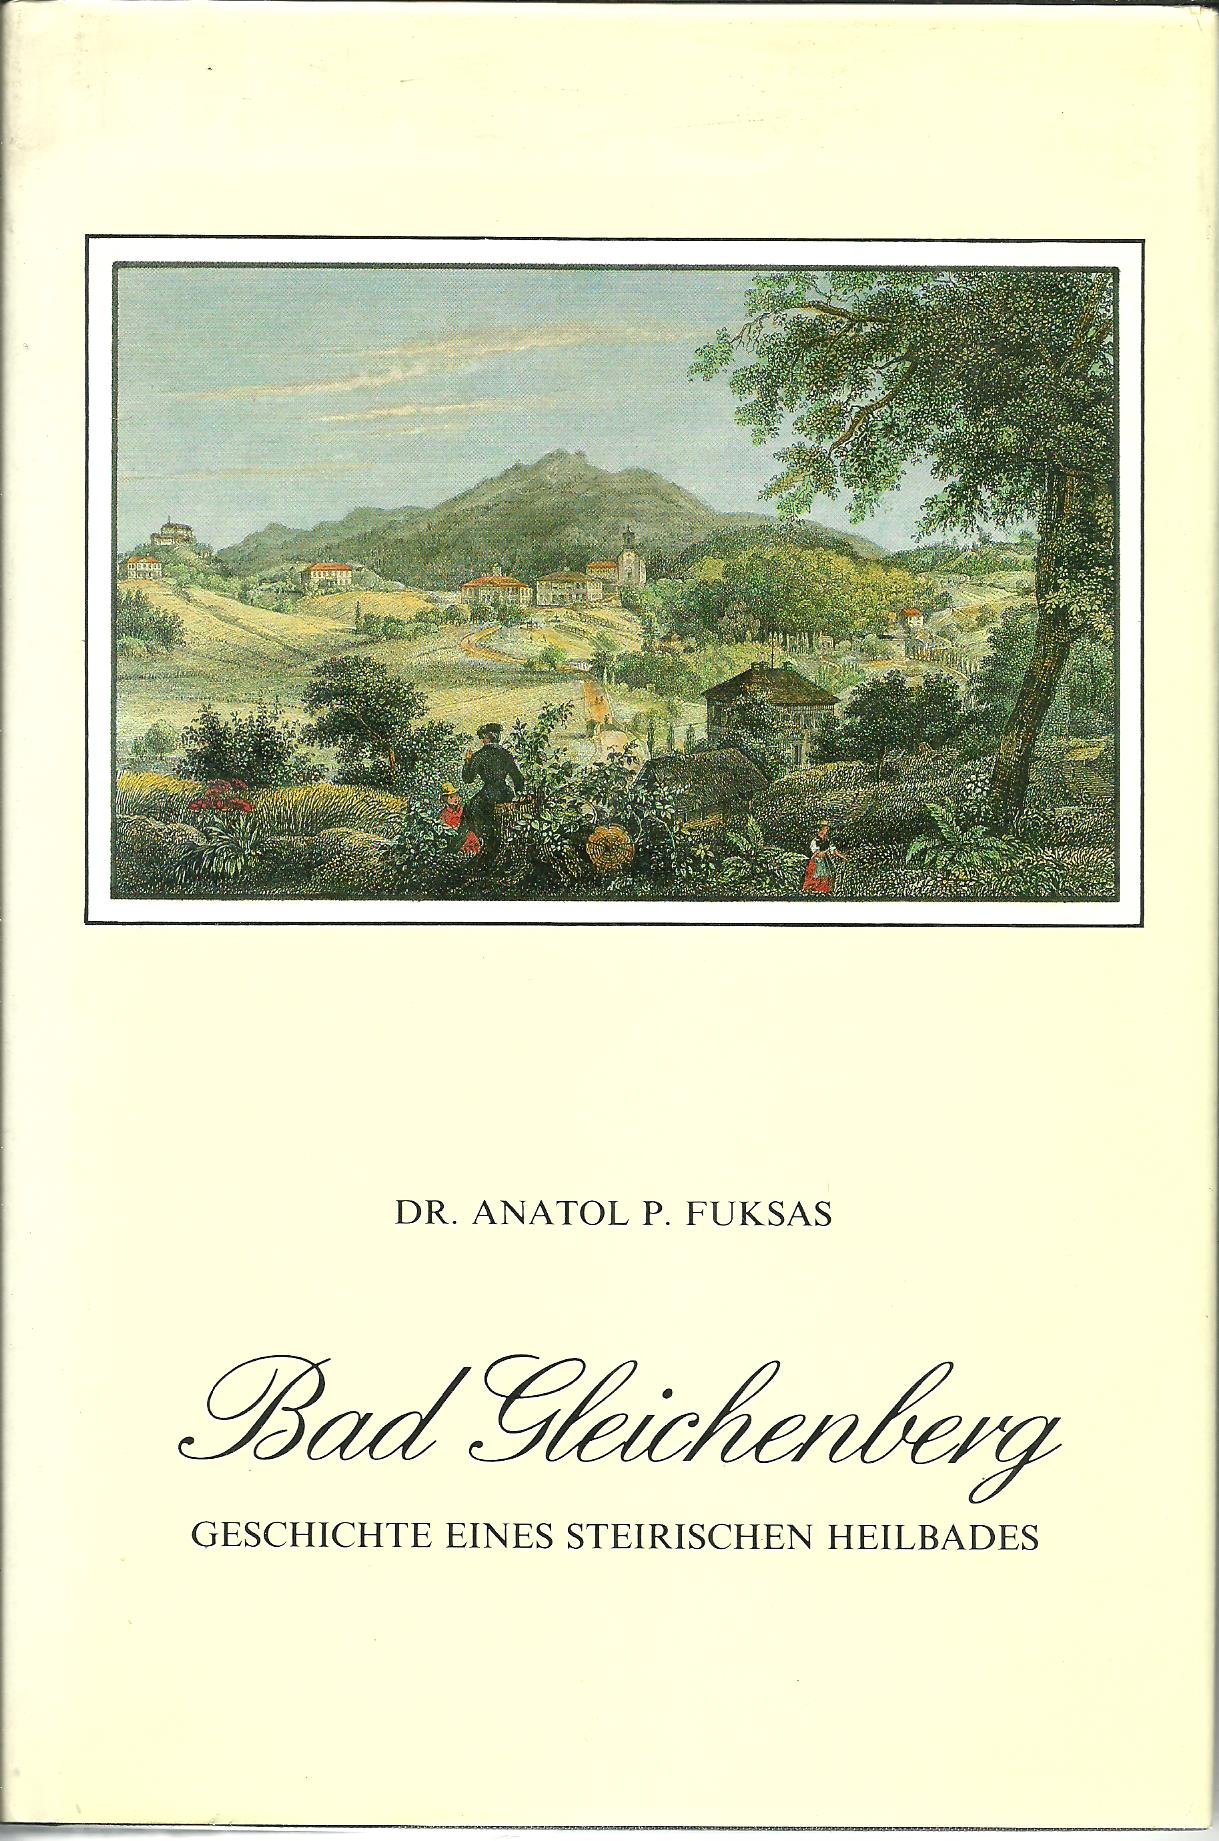 Bad Gleichenberg - Geschichte eines steirischen Heilbades 